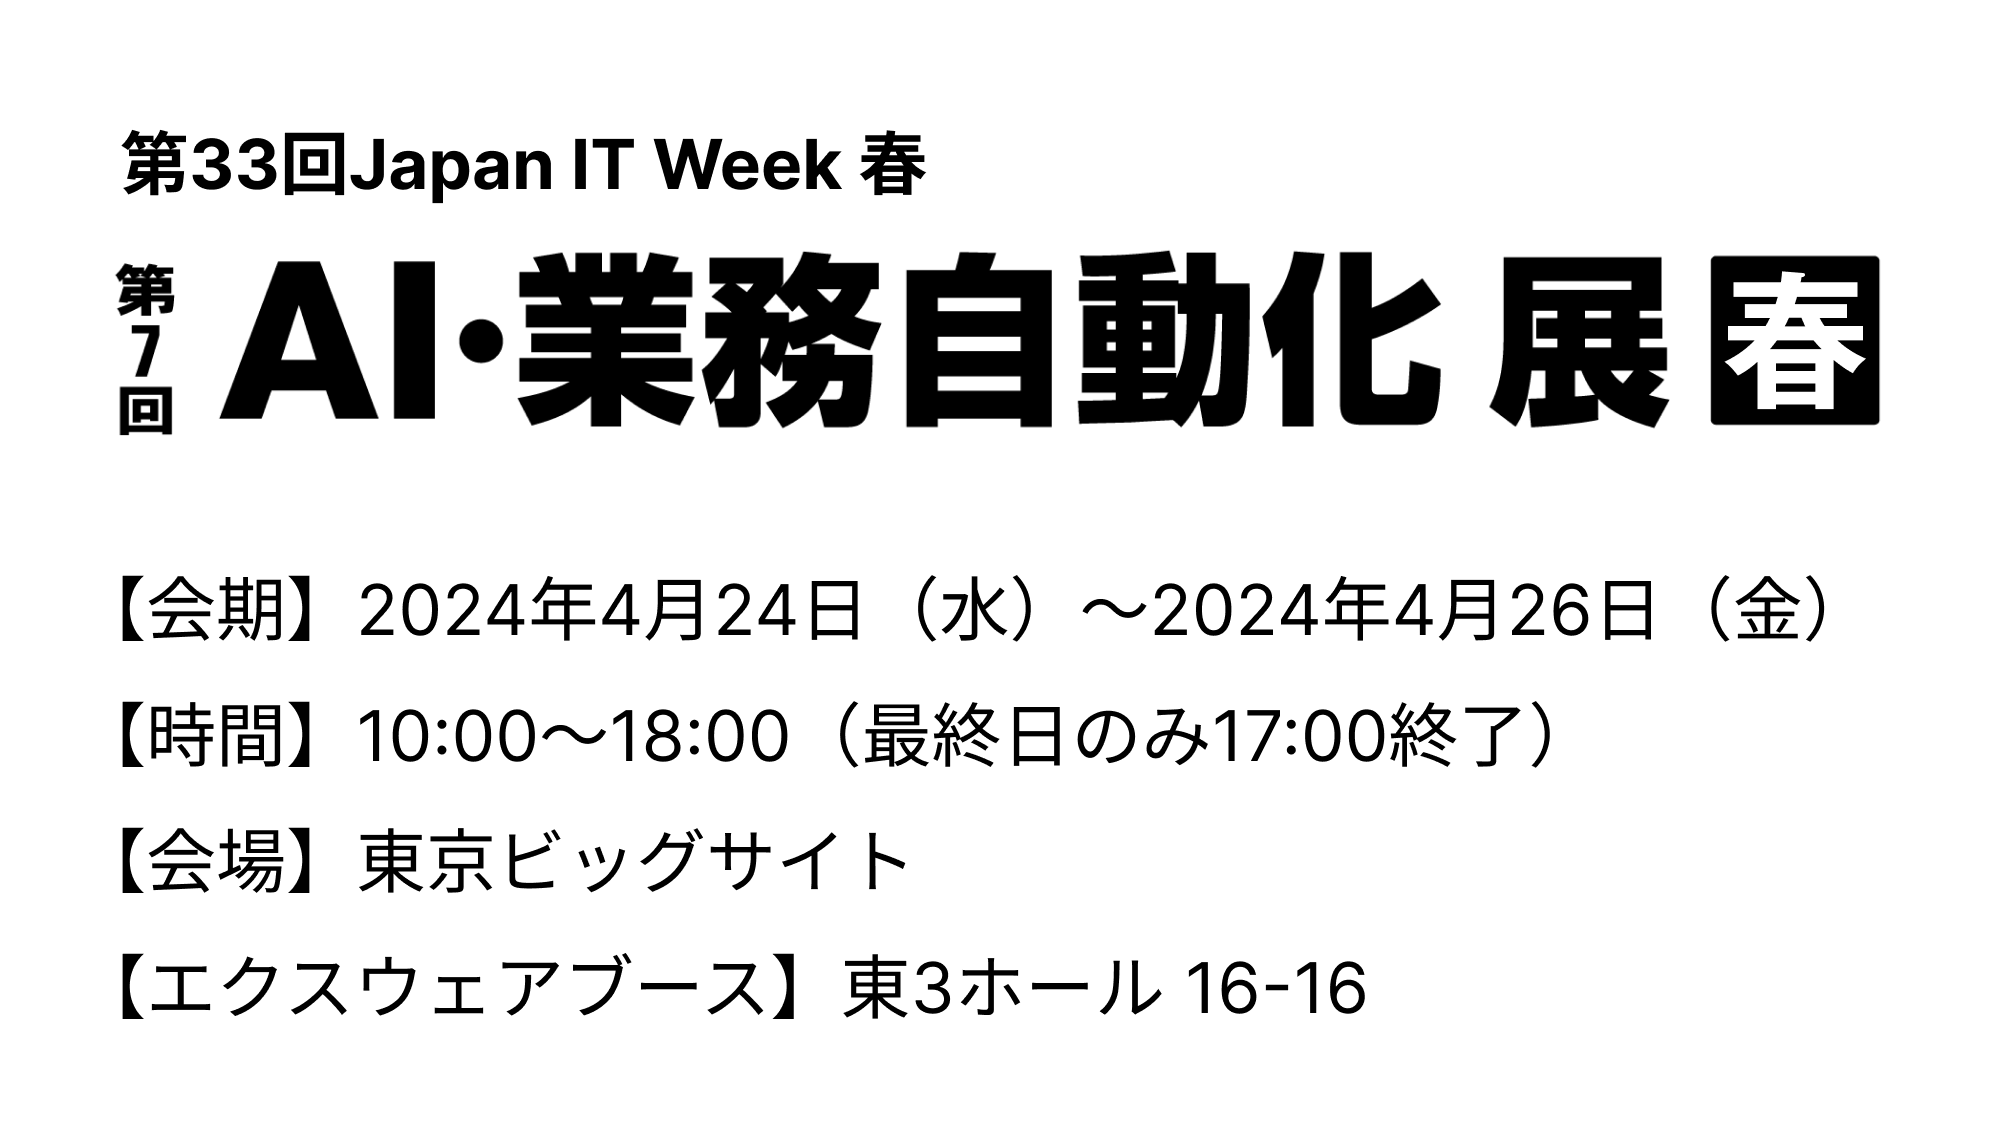 「第33回Japan IT Week 春 第7回AI・業務自動化展」出展のお知らせ